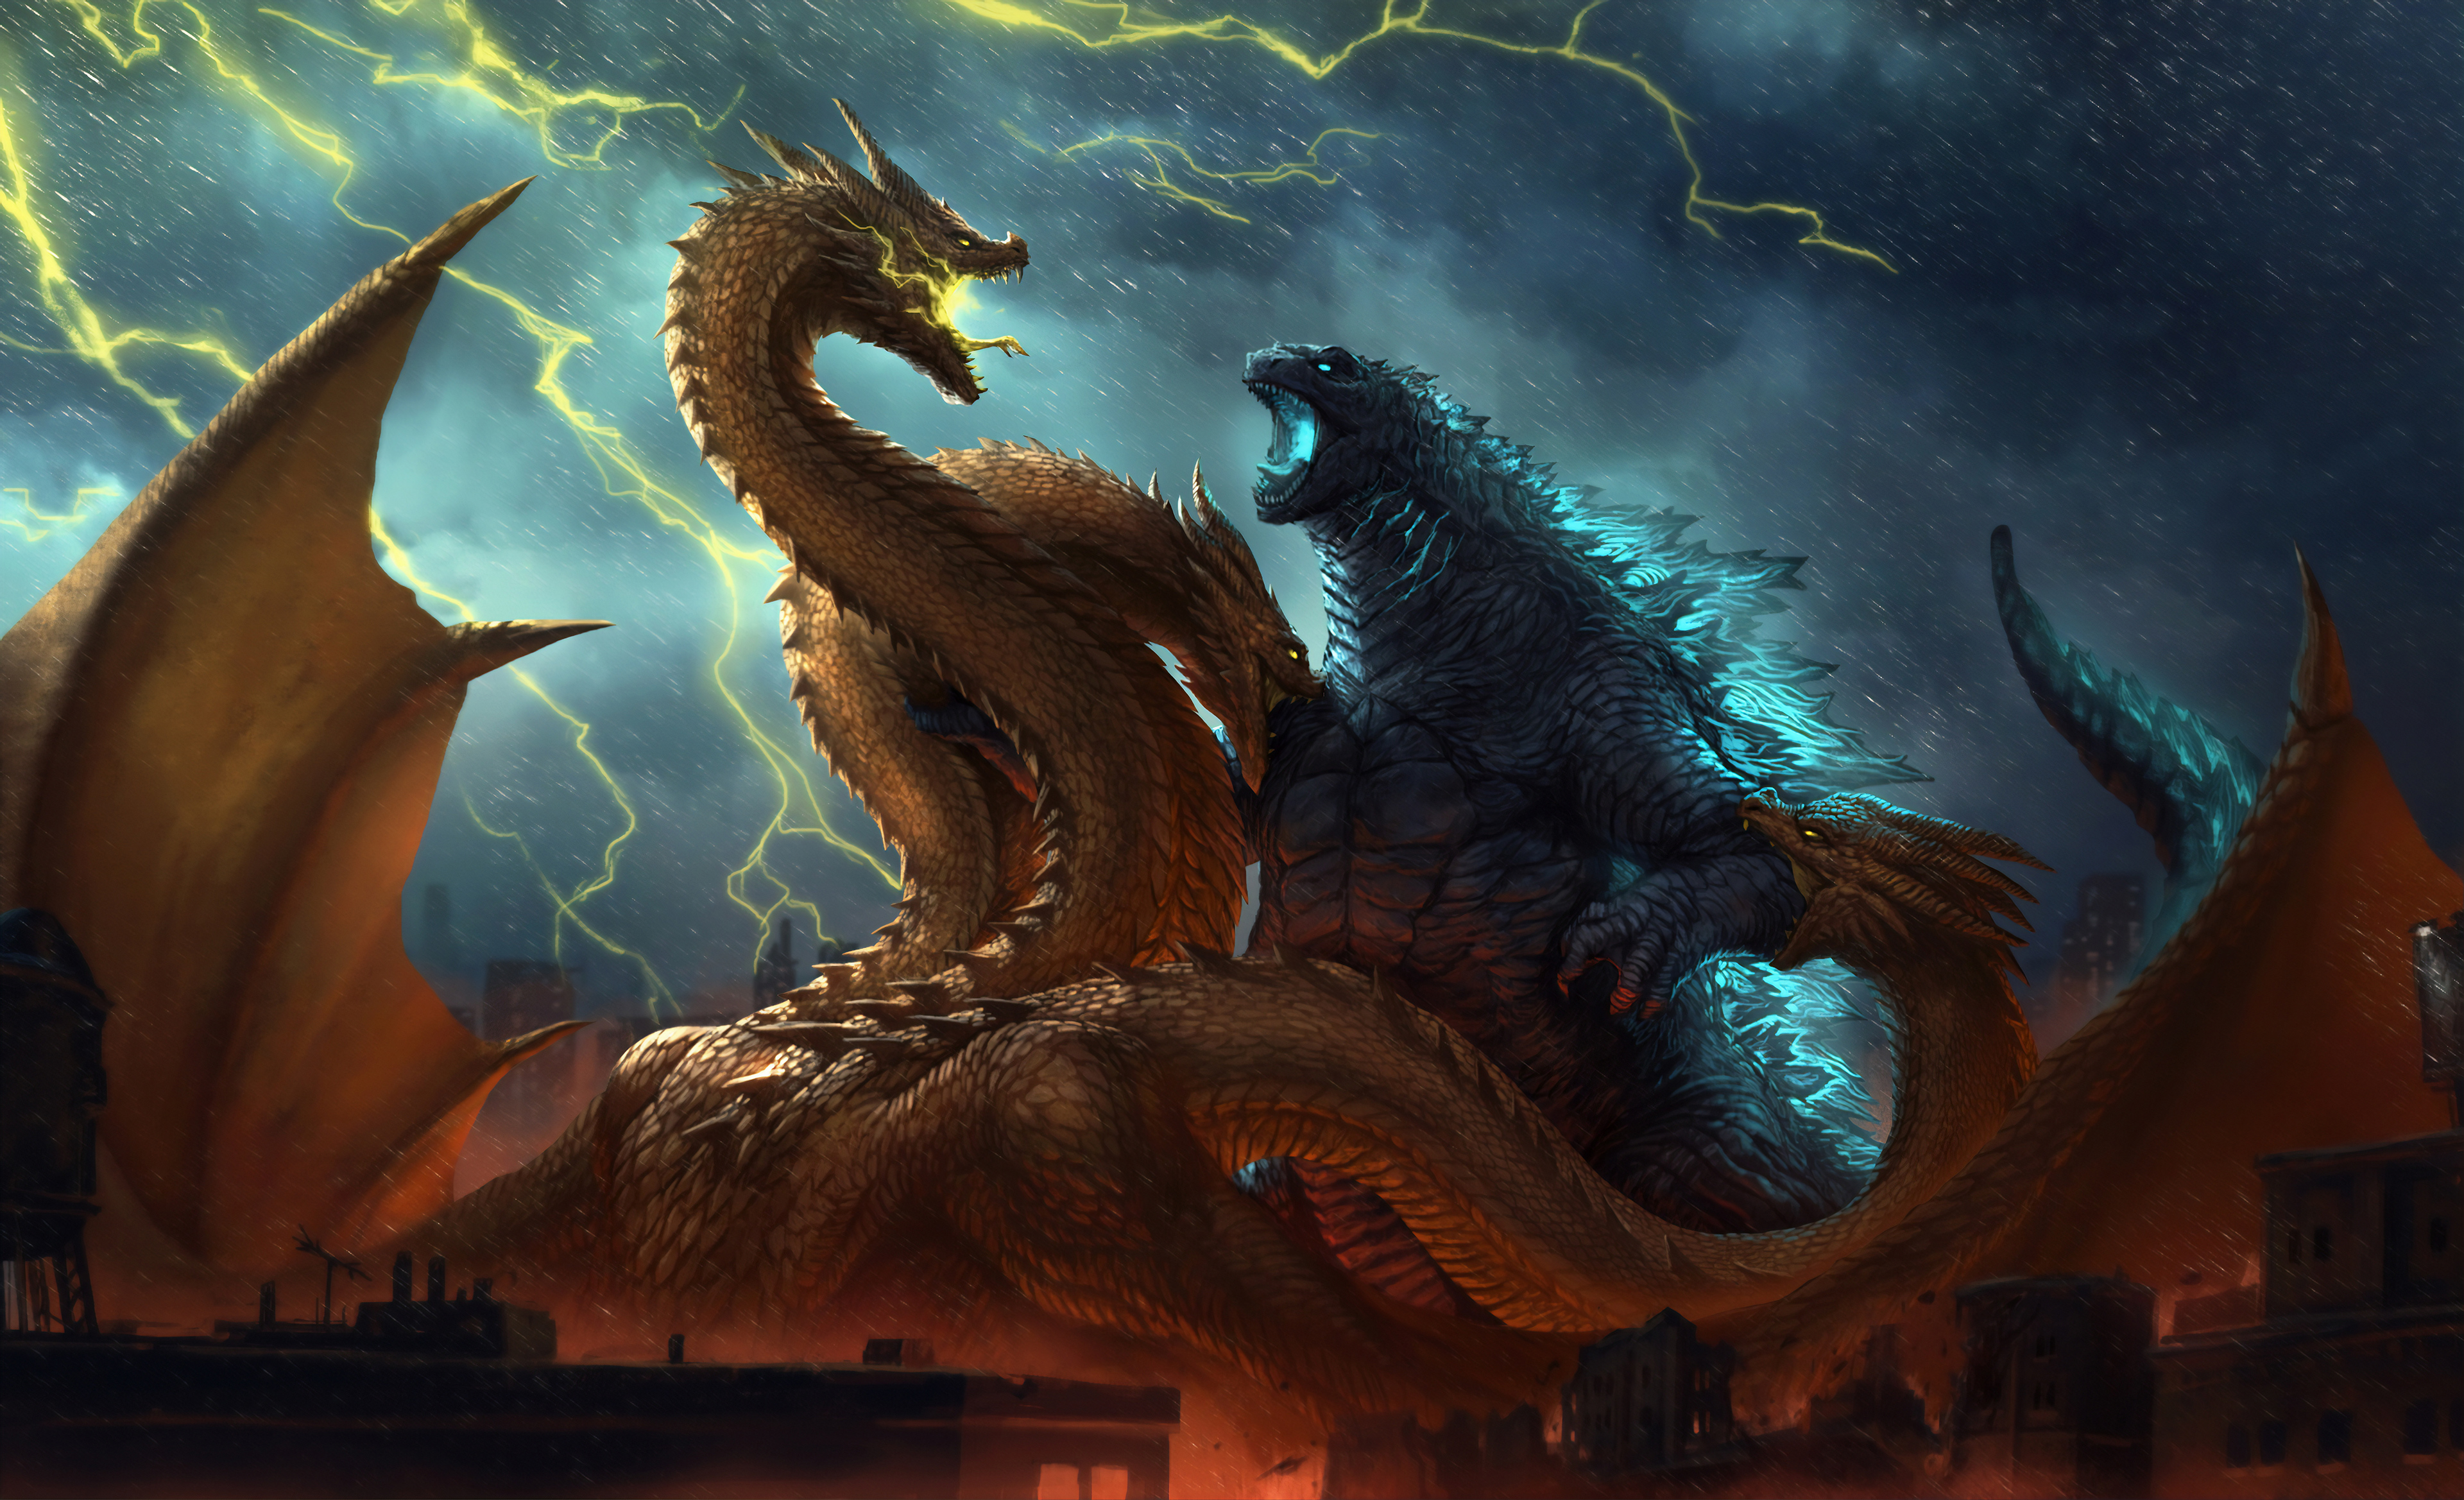 BST Hình Nền Godzilla 4K Độ Phân Giải Cao  Godzilla Wallpaper Miễn Phí   Top 10 Hà Nội